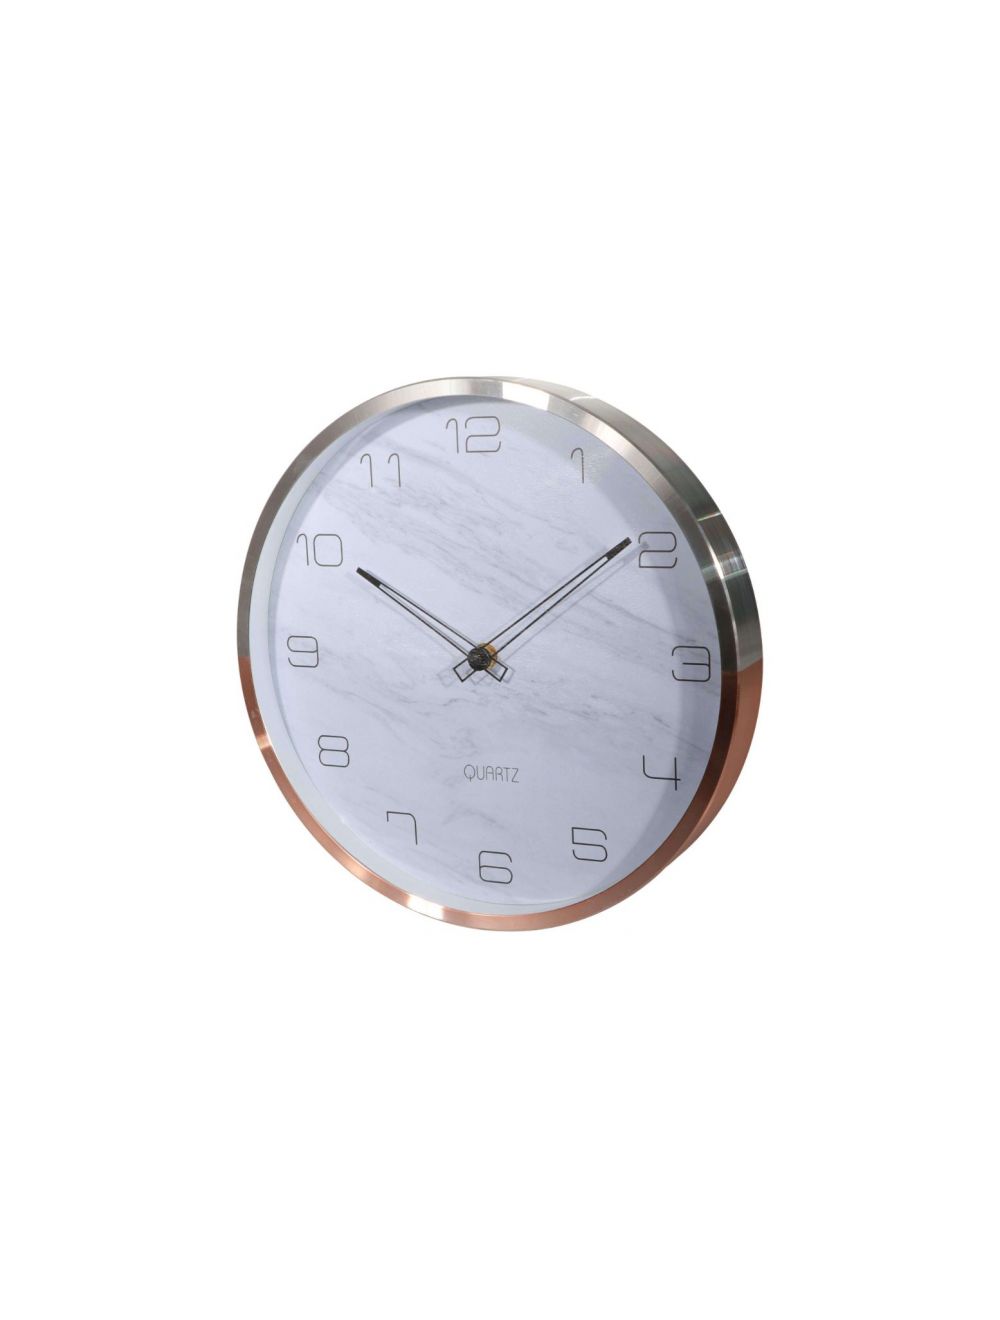 Royalford RF9282 Wall Clock Aluminium Frame